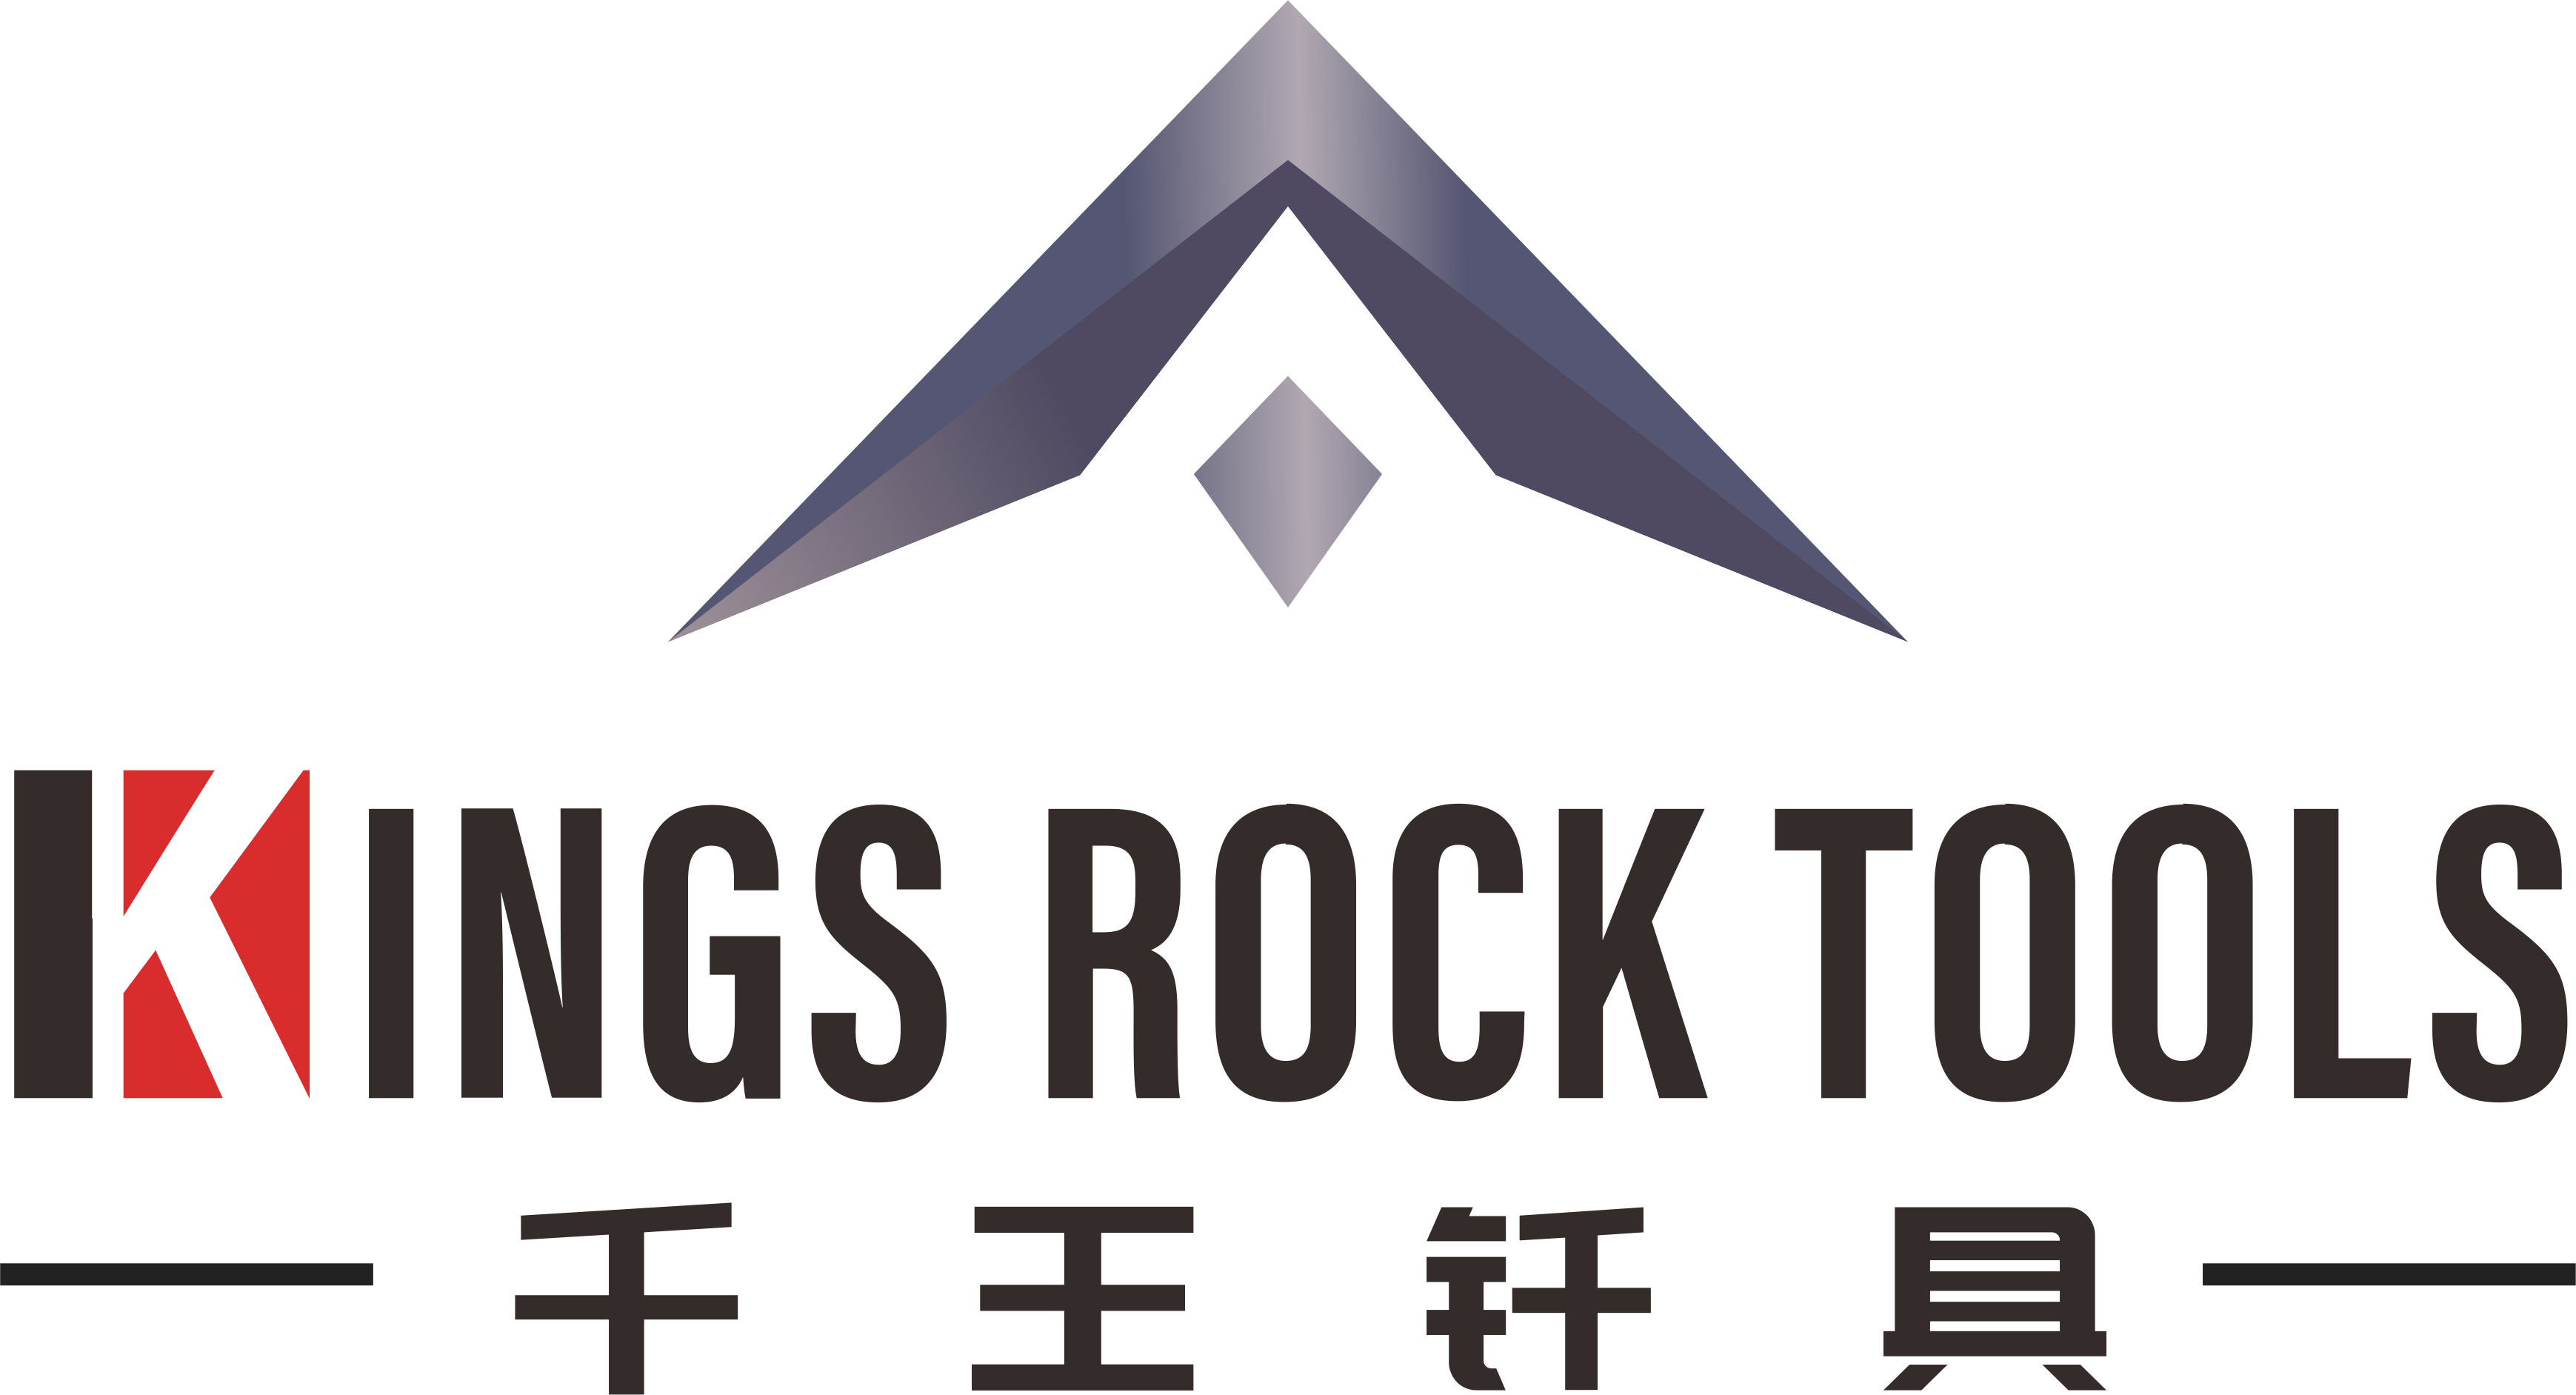 Kings Rock Tools